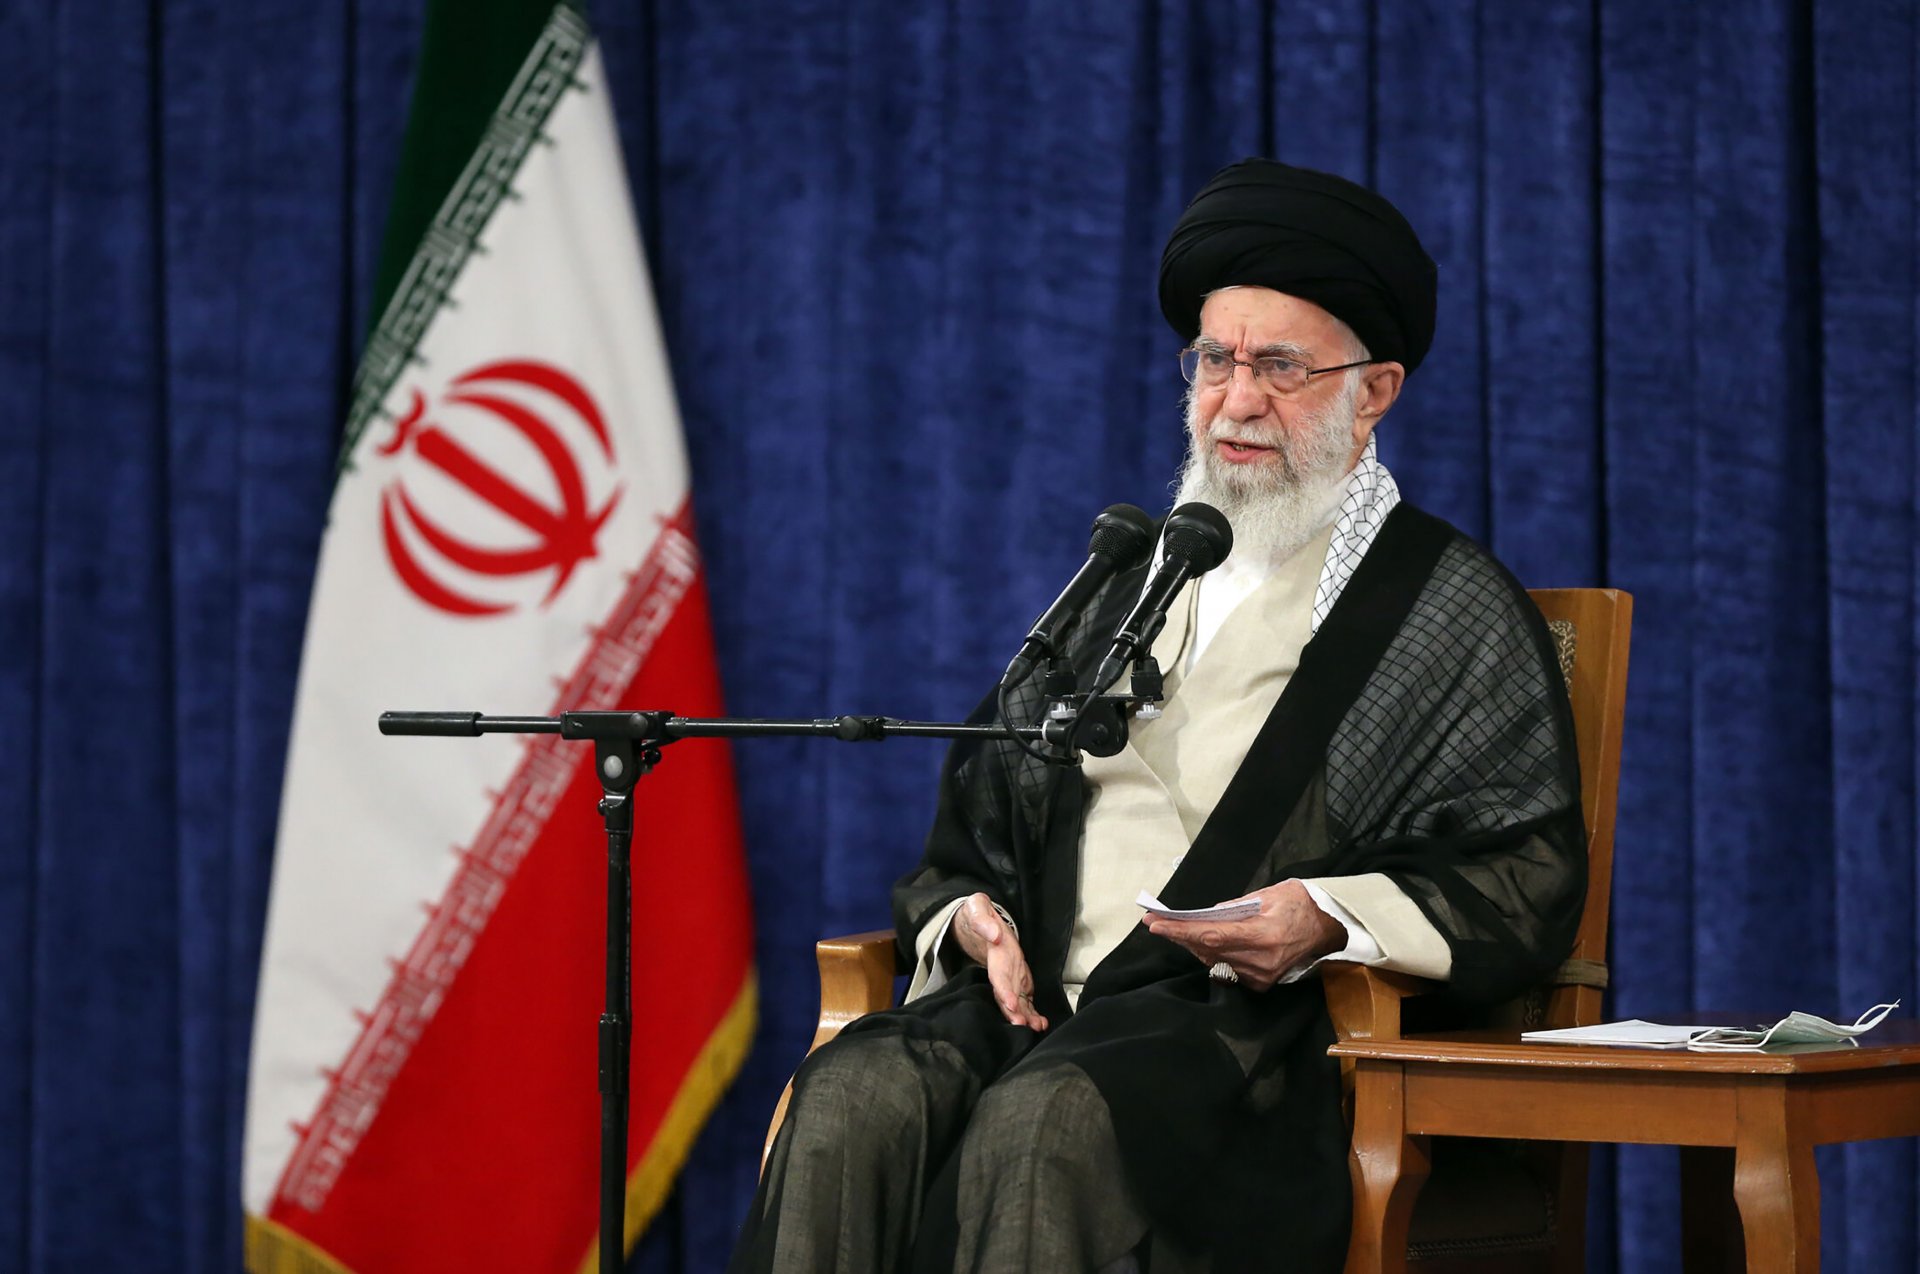 Аятолахът на Иран Али Хаменей заяви наскоро, че никой не може да върне времето назад и Революцията ще пребъде